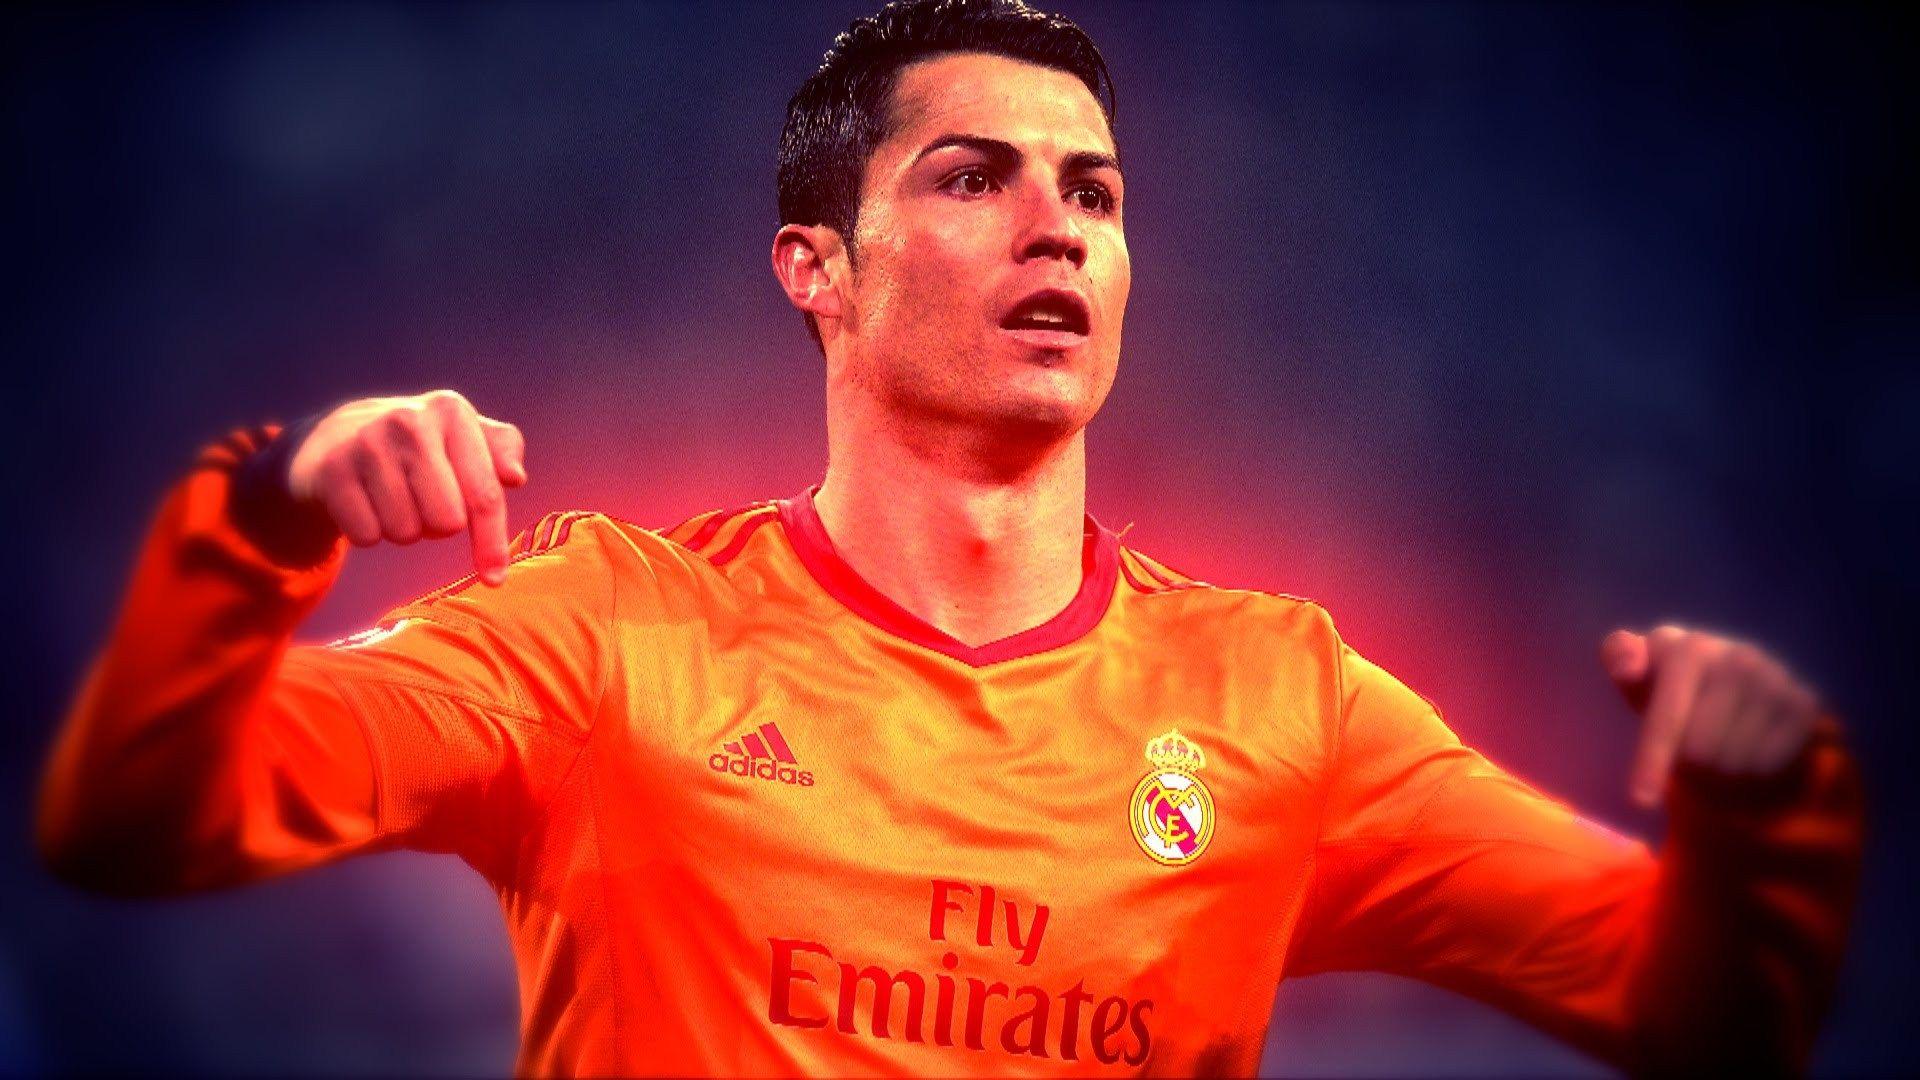 Download Cristiano Ronaldo Wallpaper 2015 2016 in HD Soccer